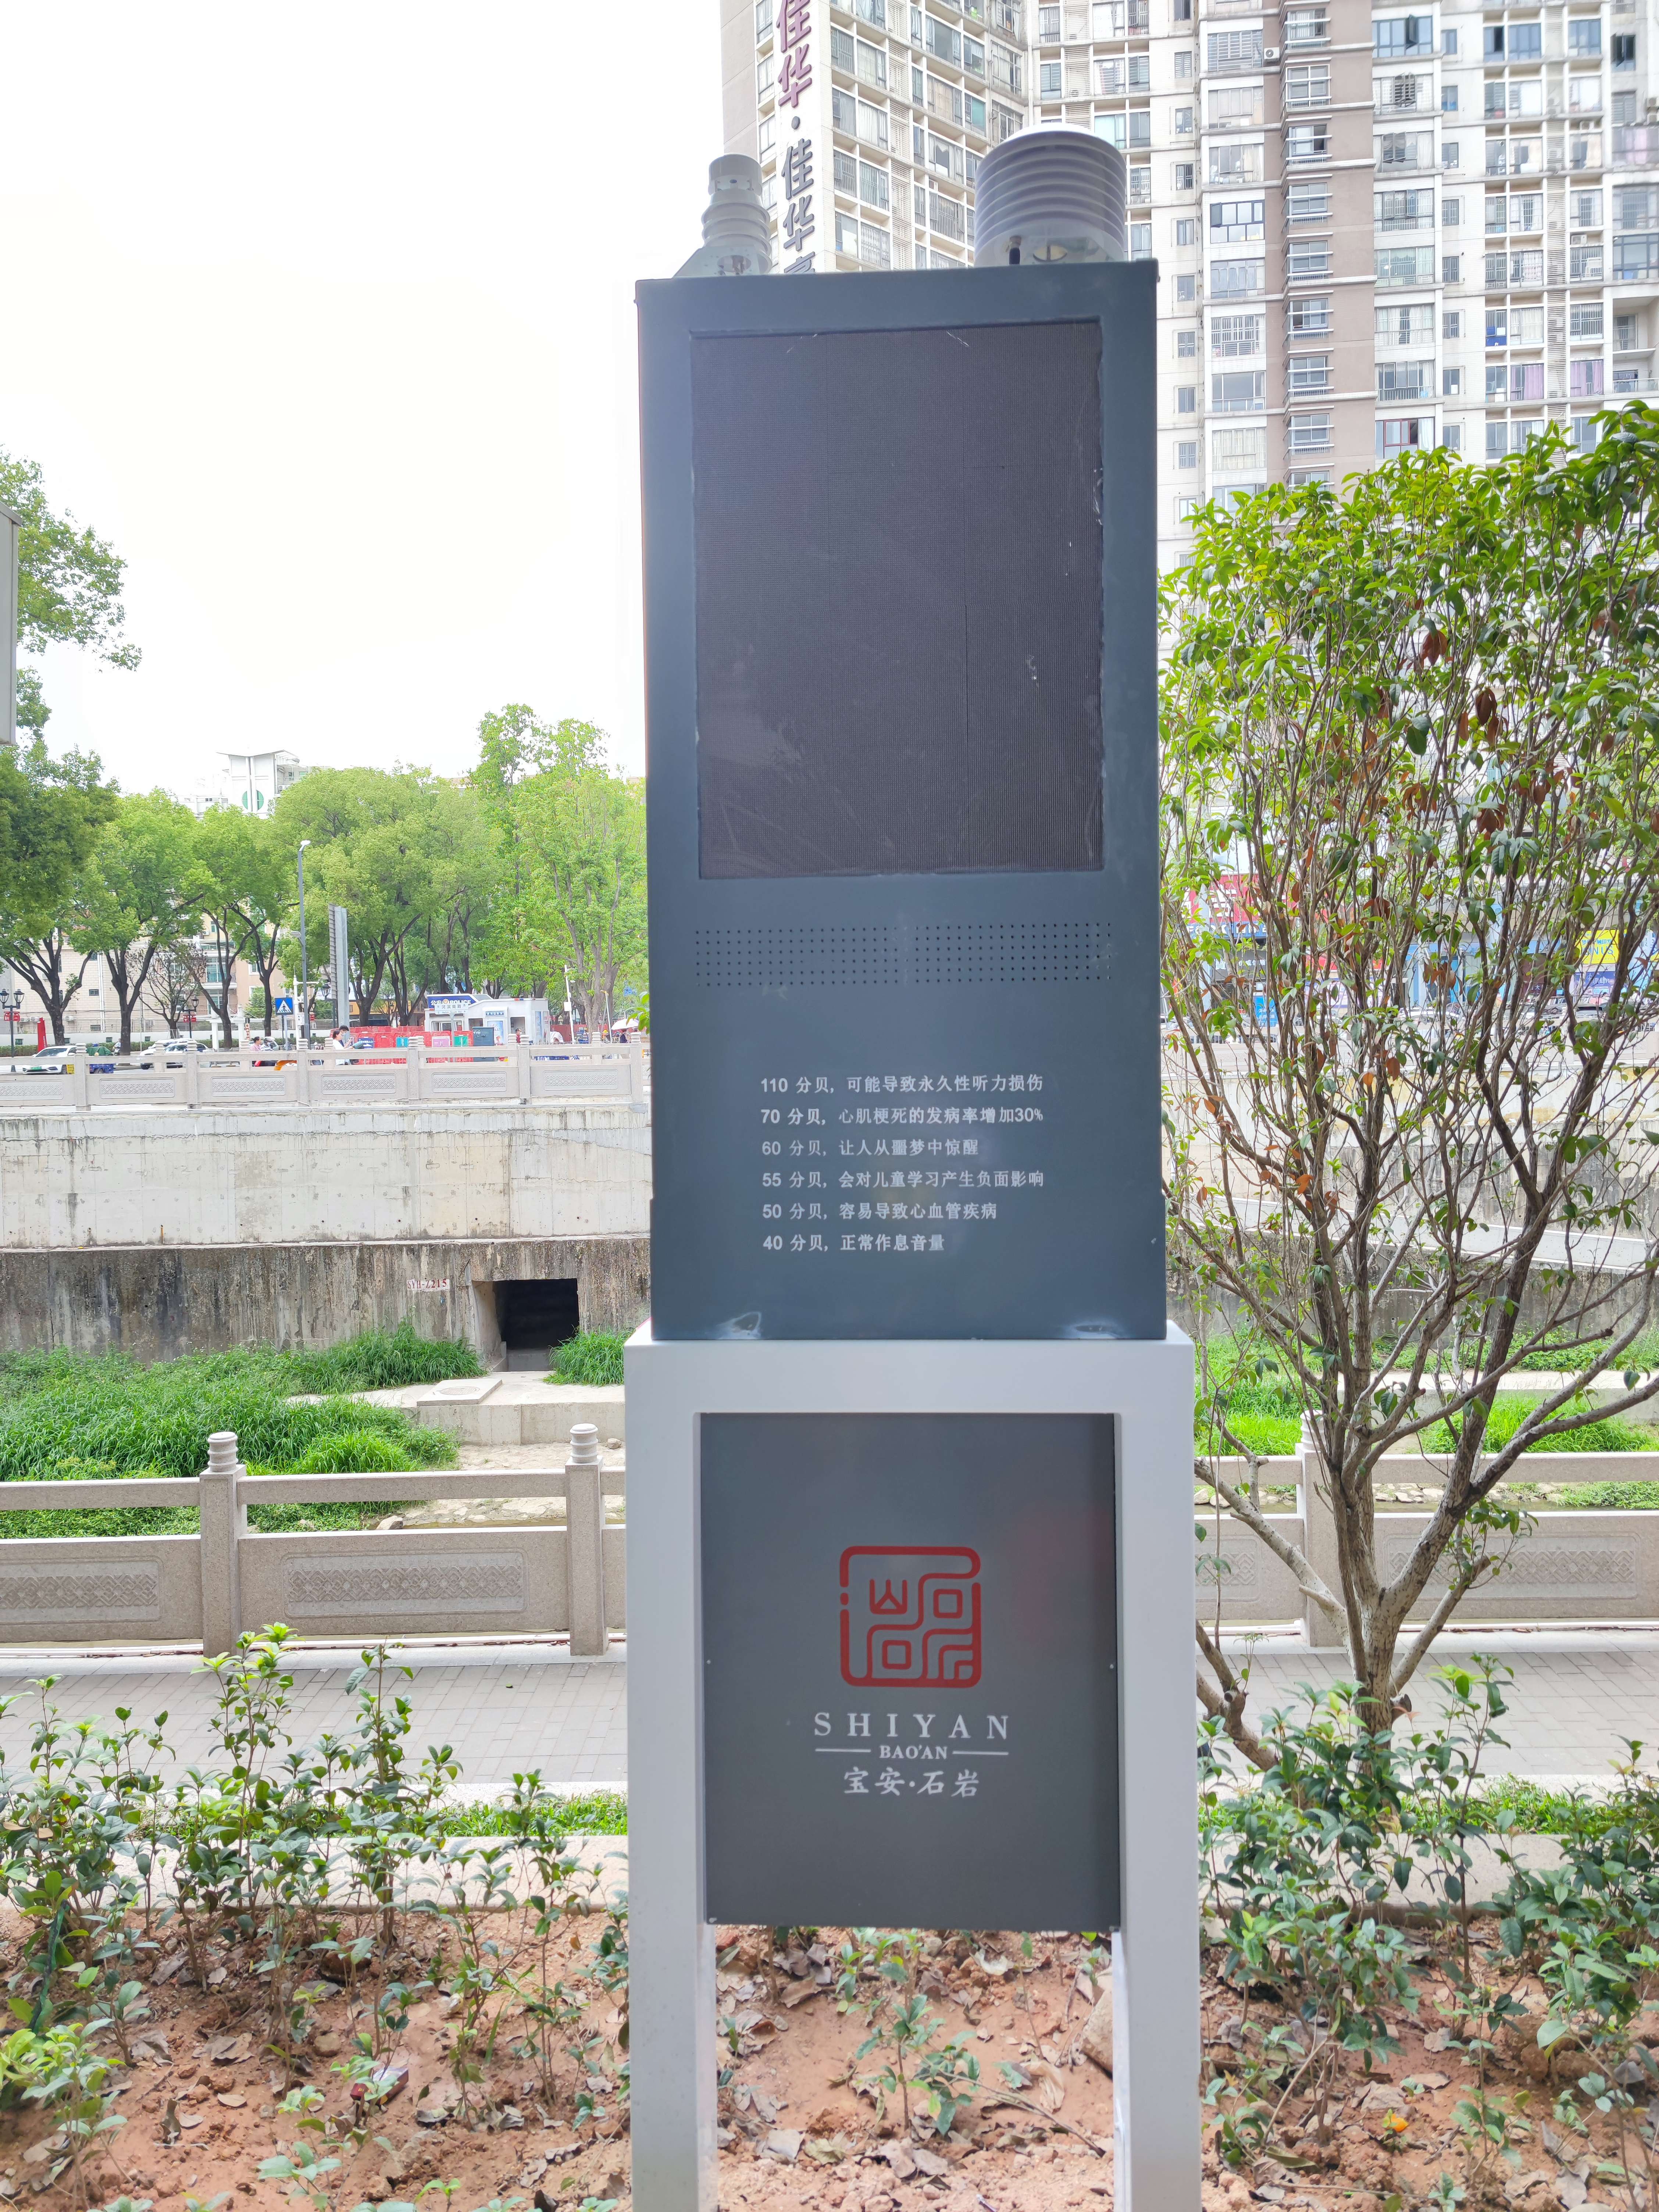 北京可视化噪声超标喊话系统  在建工地噪声超标喊话系统